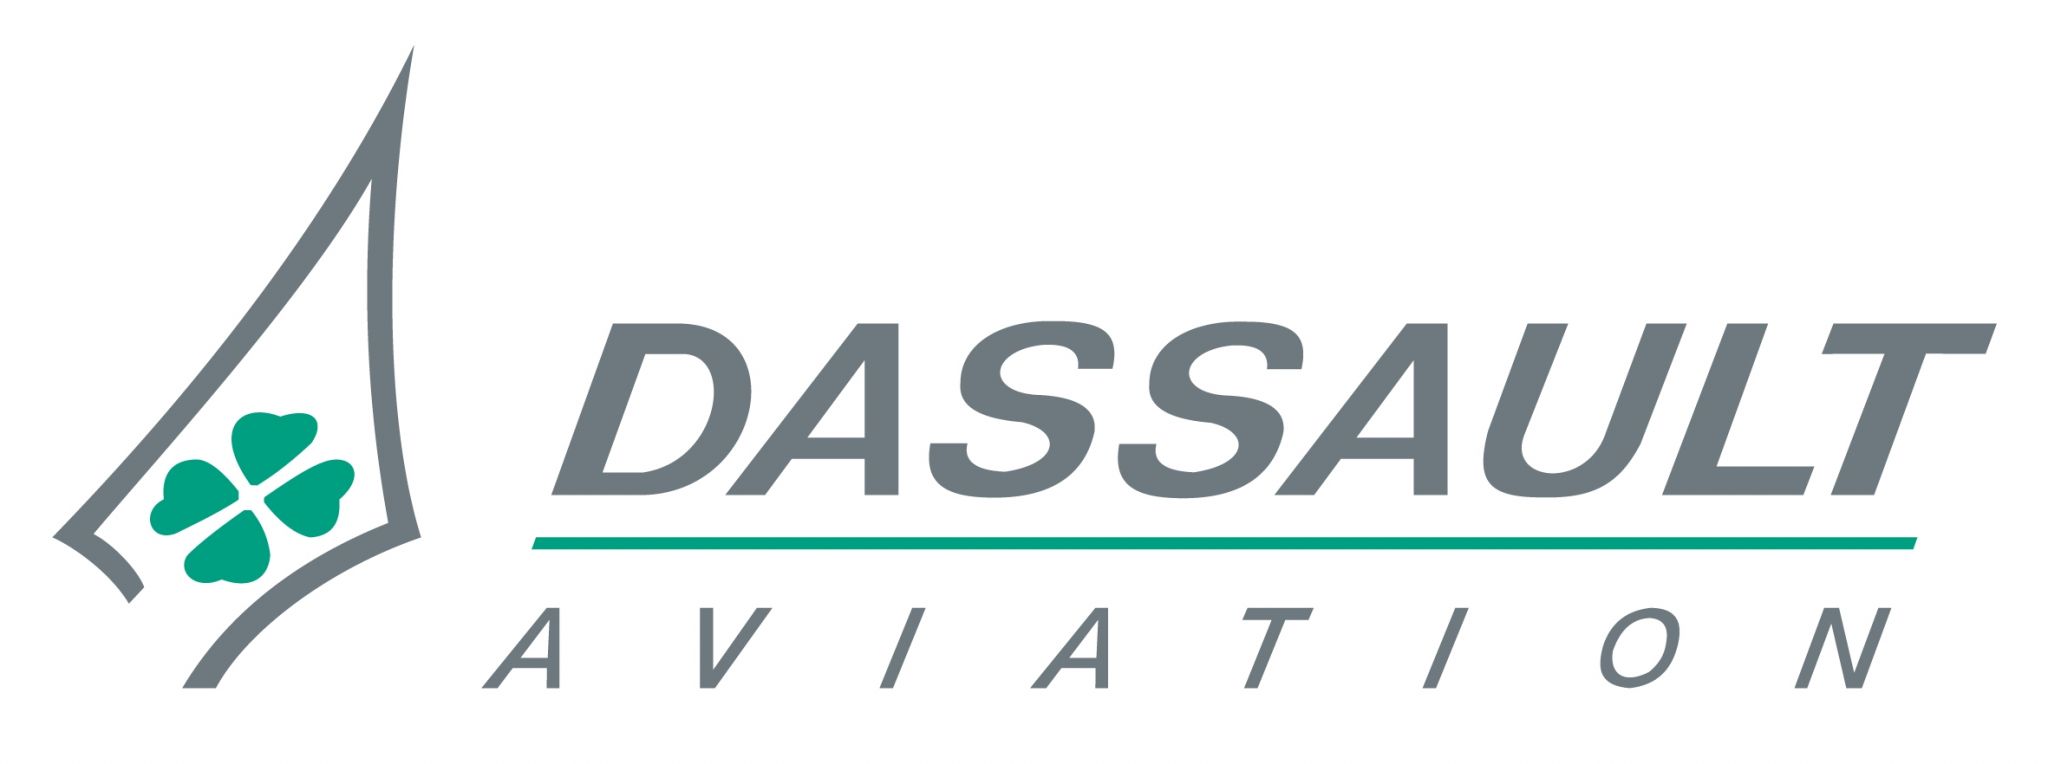 /assets/contentimages/Dassault_mirage_logo.jpg